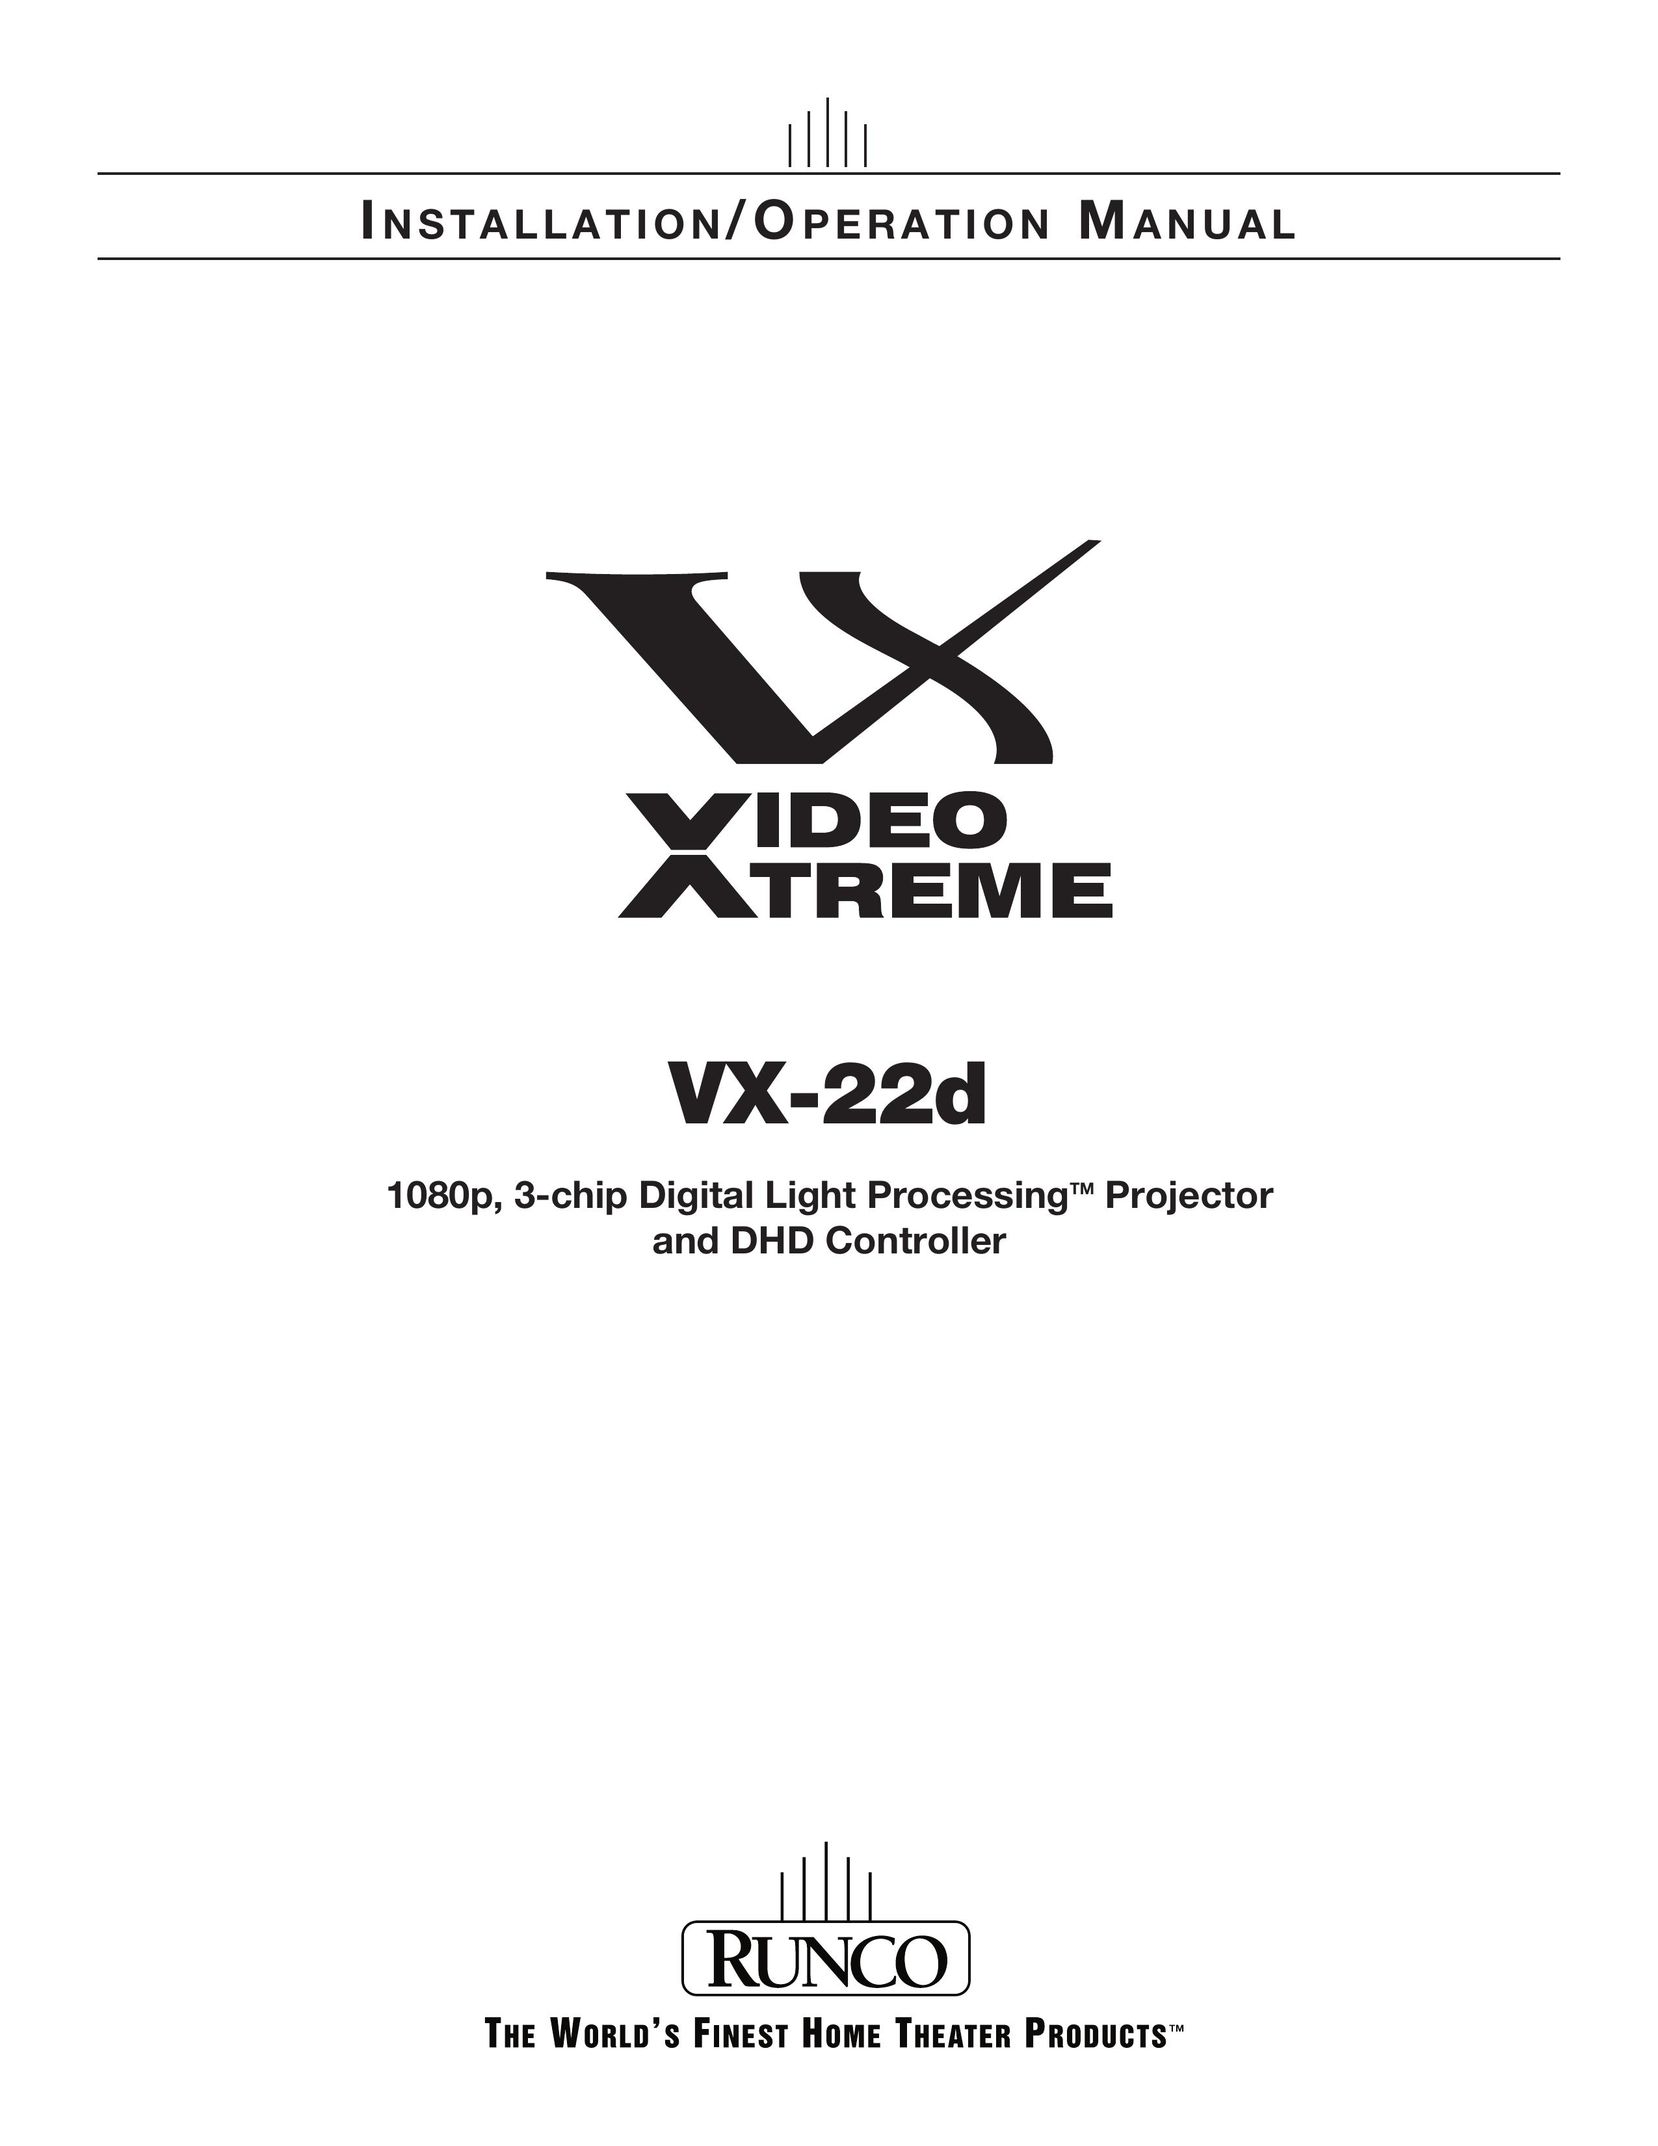 Runco VX-22D Projector User Manual